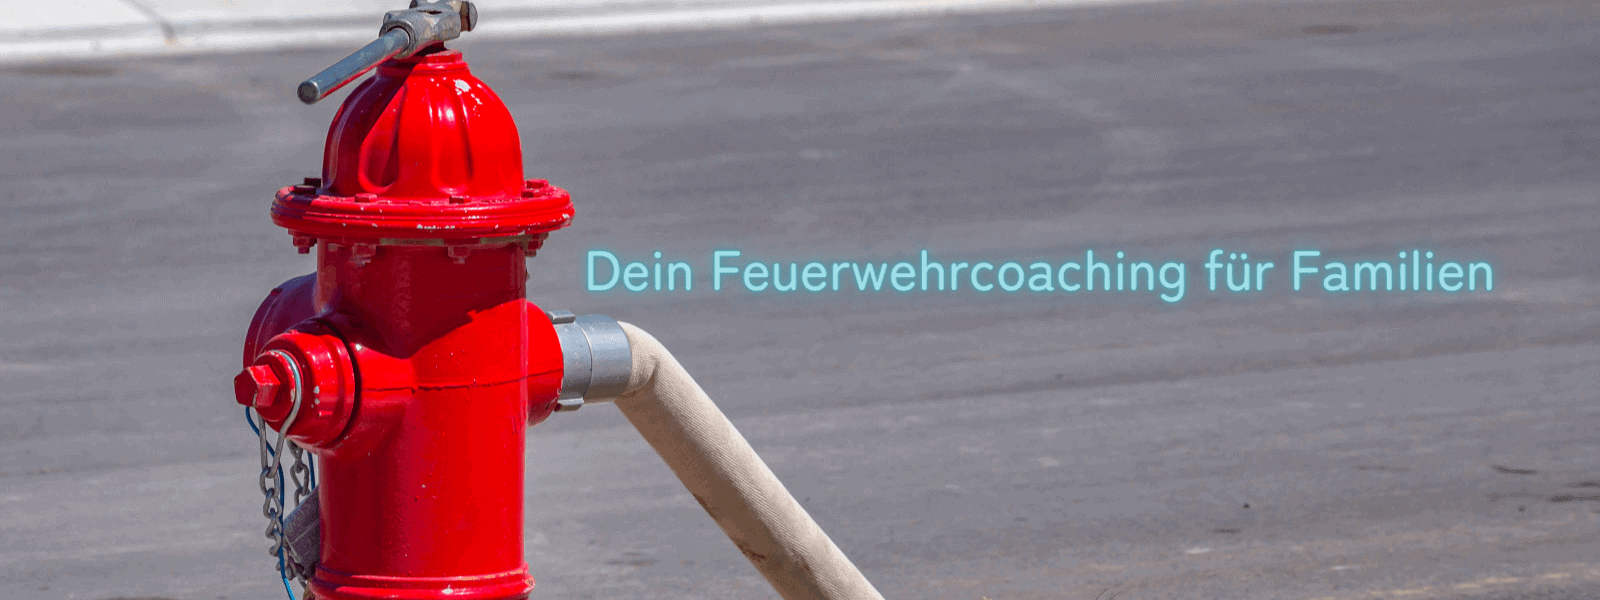 Feuerwehrcoaching für Familien, roter Hydrant mit angeschlossem Schlauch